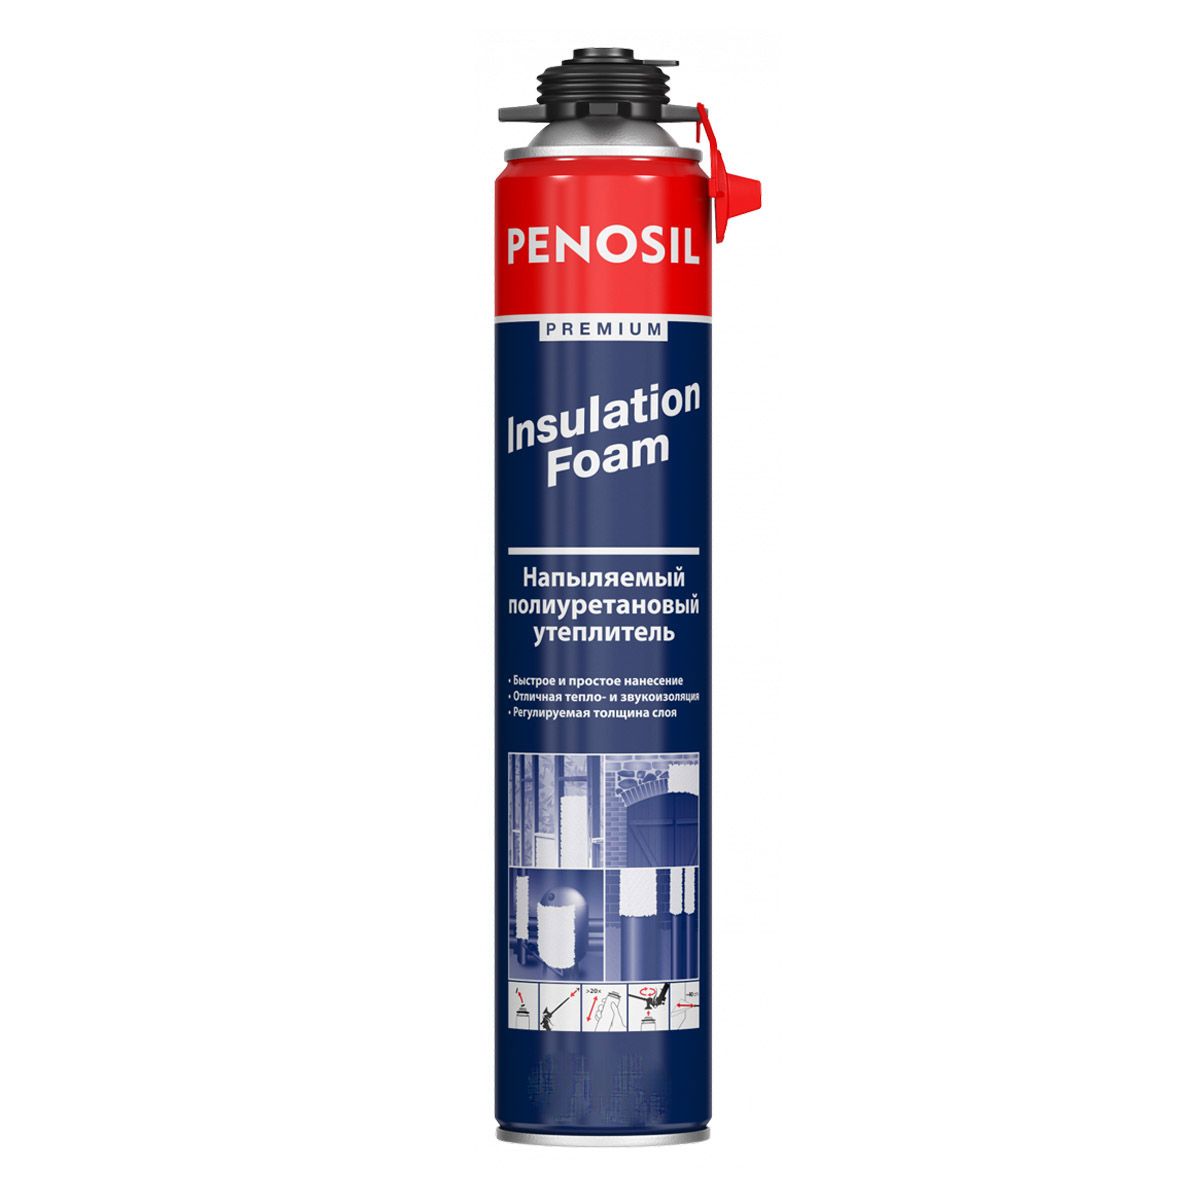 фотография товара Penosil Premium Insulation Foam, напыляемый полиуретановый утеплитель, 890 ml 